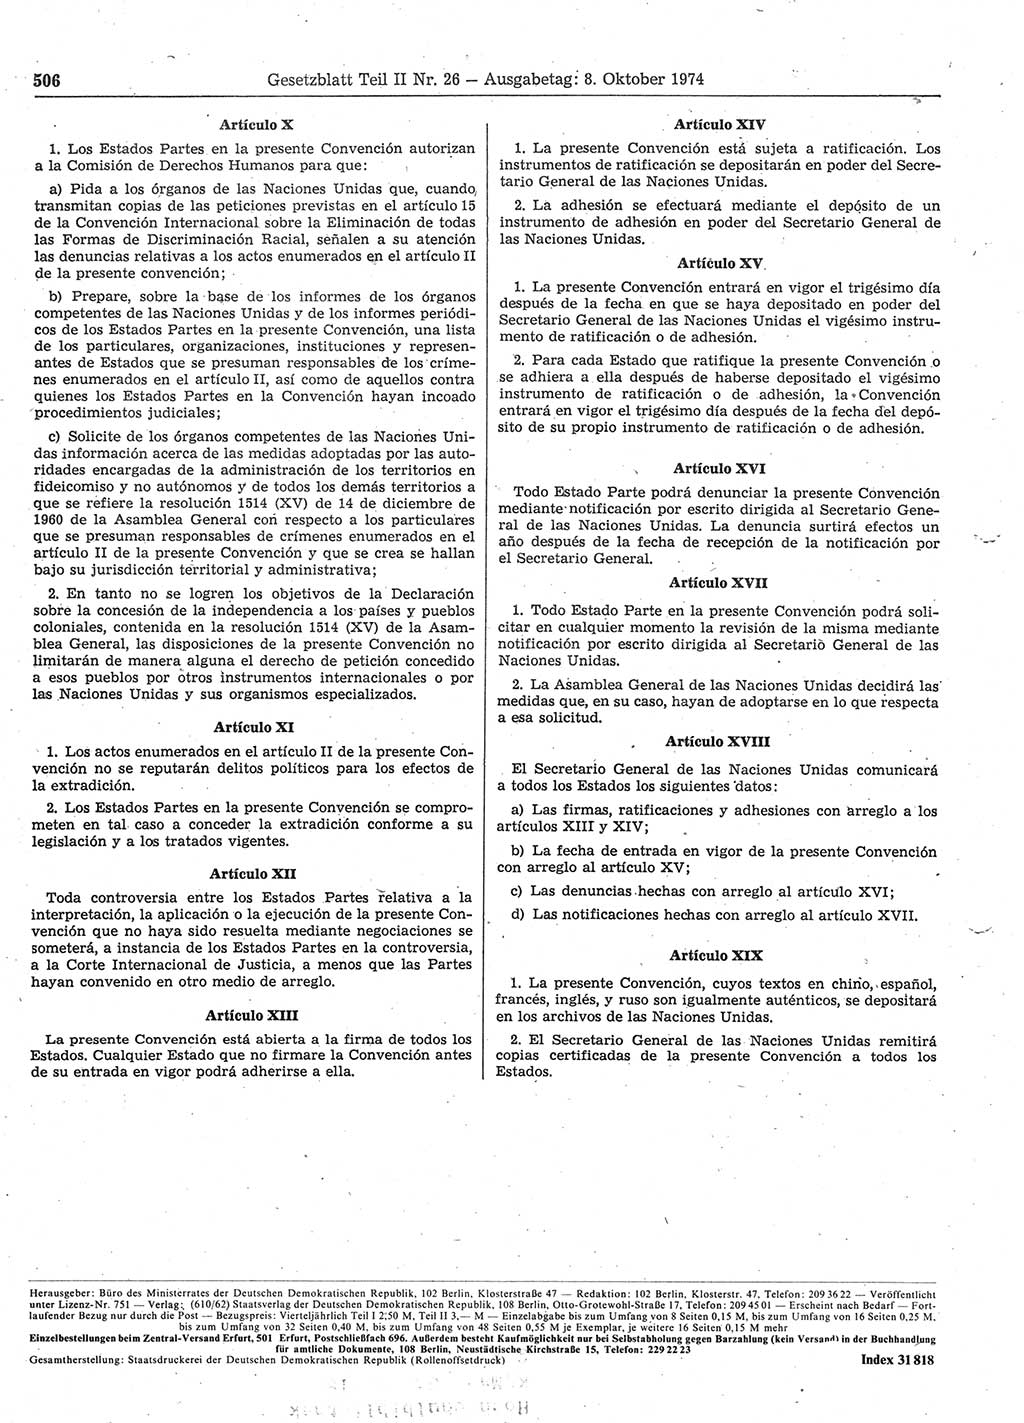 Gesetzblatt (GBl.) der Deutschen Demokratischen Republik (DDR) Teil ⅠⅠ 1974, Seite 506 (GBl. DDR ⅠⅠ 1974, S. 506)